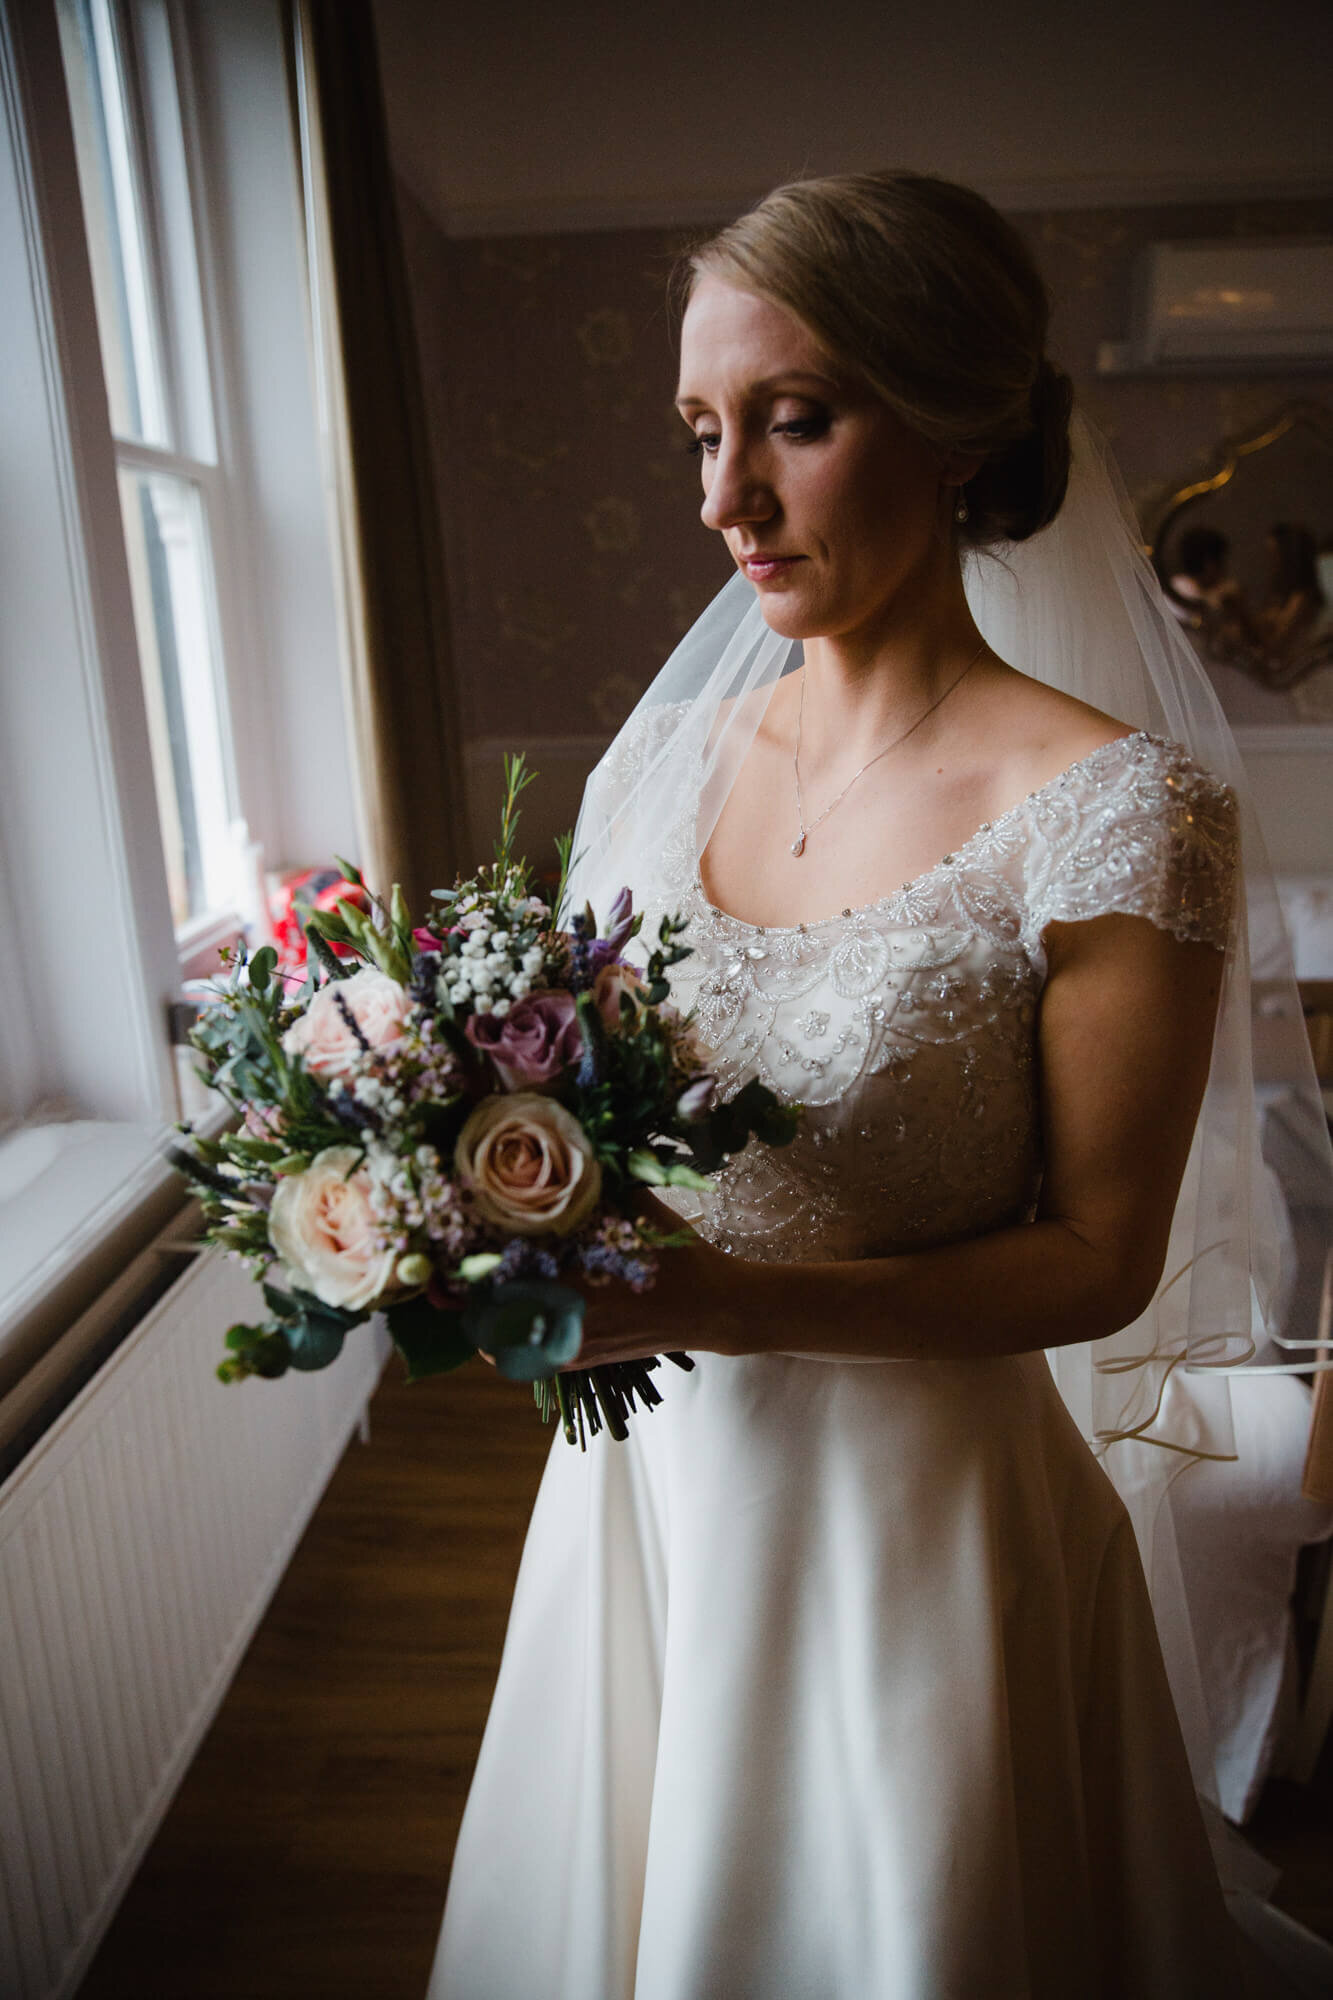 bride holding flower bouquet in window light